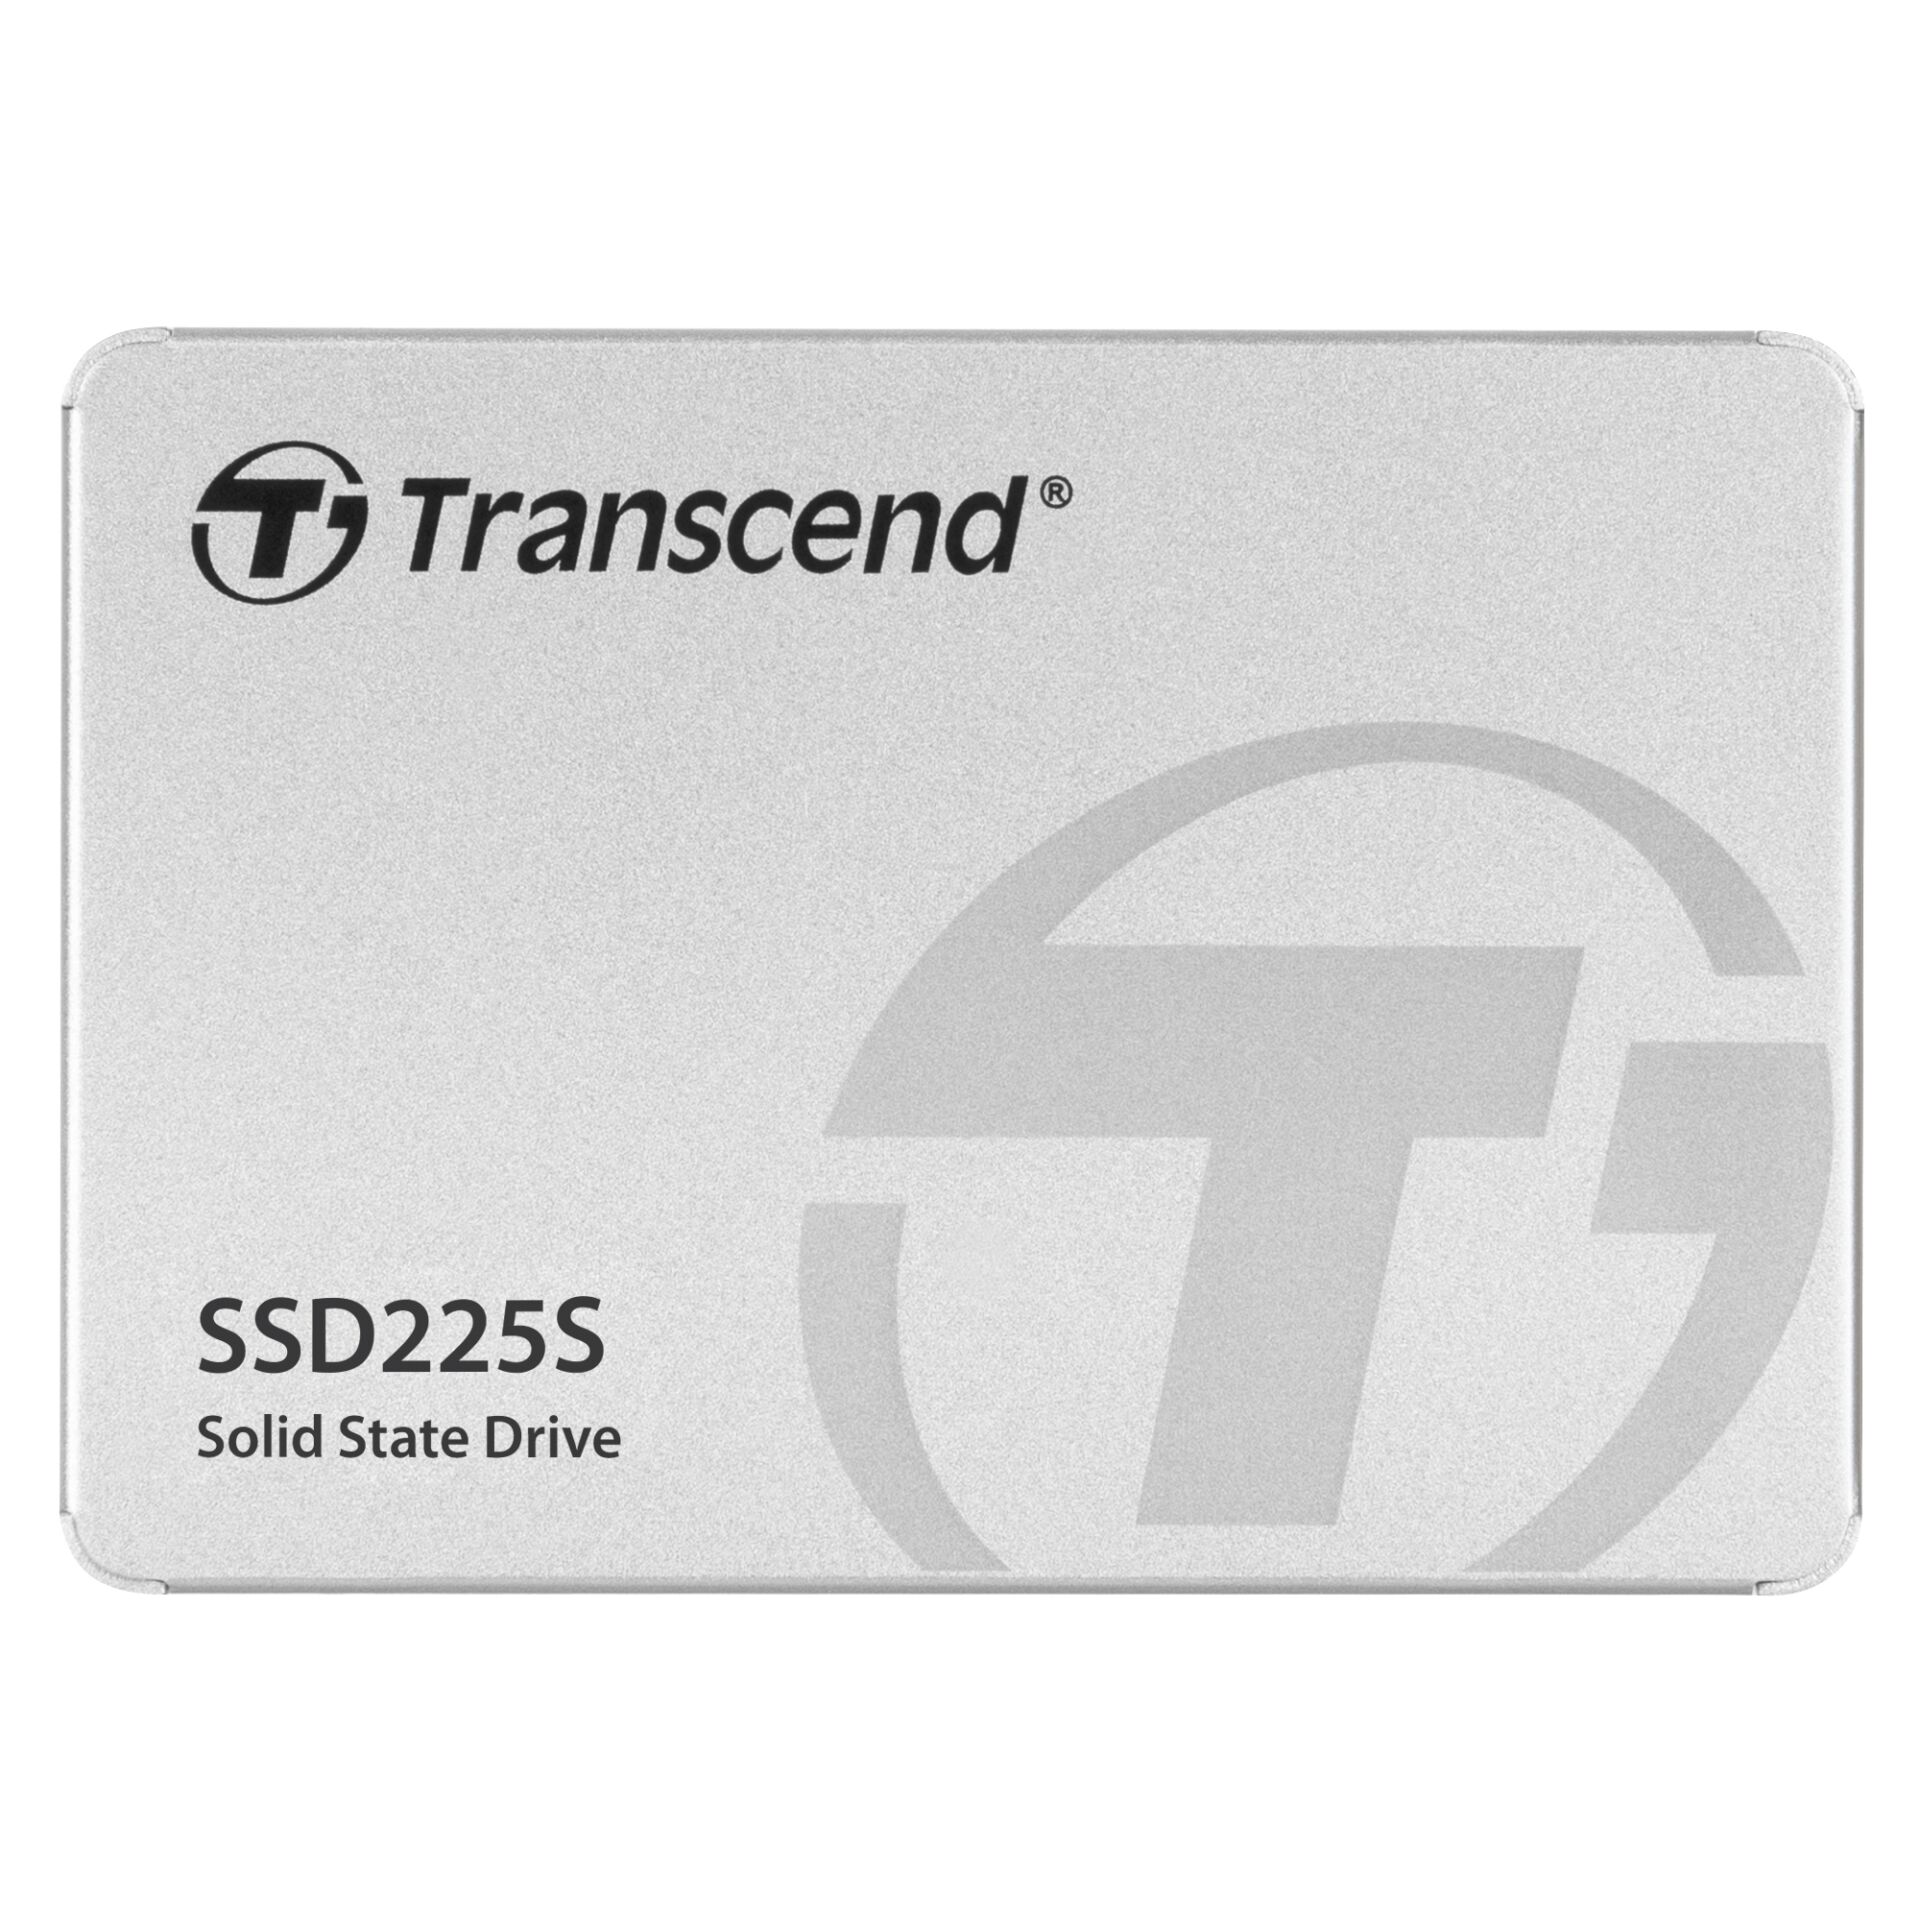 500 GB SSD Transcend SSD225S, SATA 6Gb/s lesen: 530MB/s, schreiben: 480MB/s, TBW: 180TB